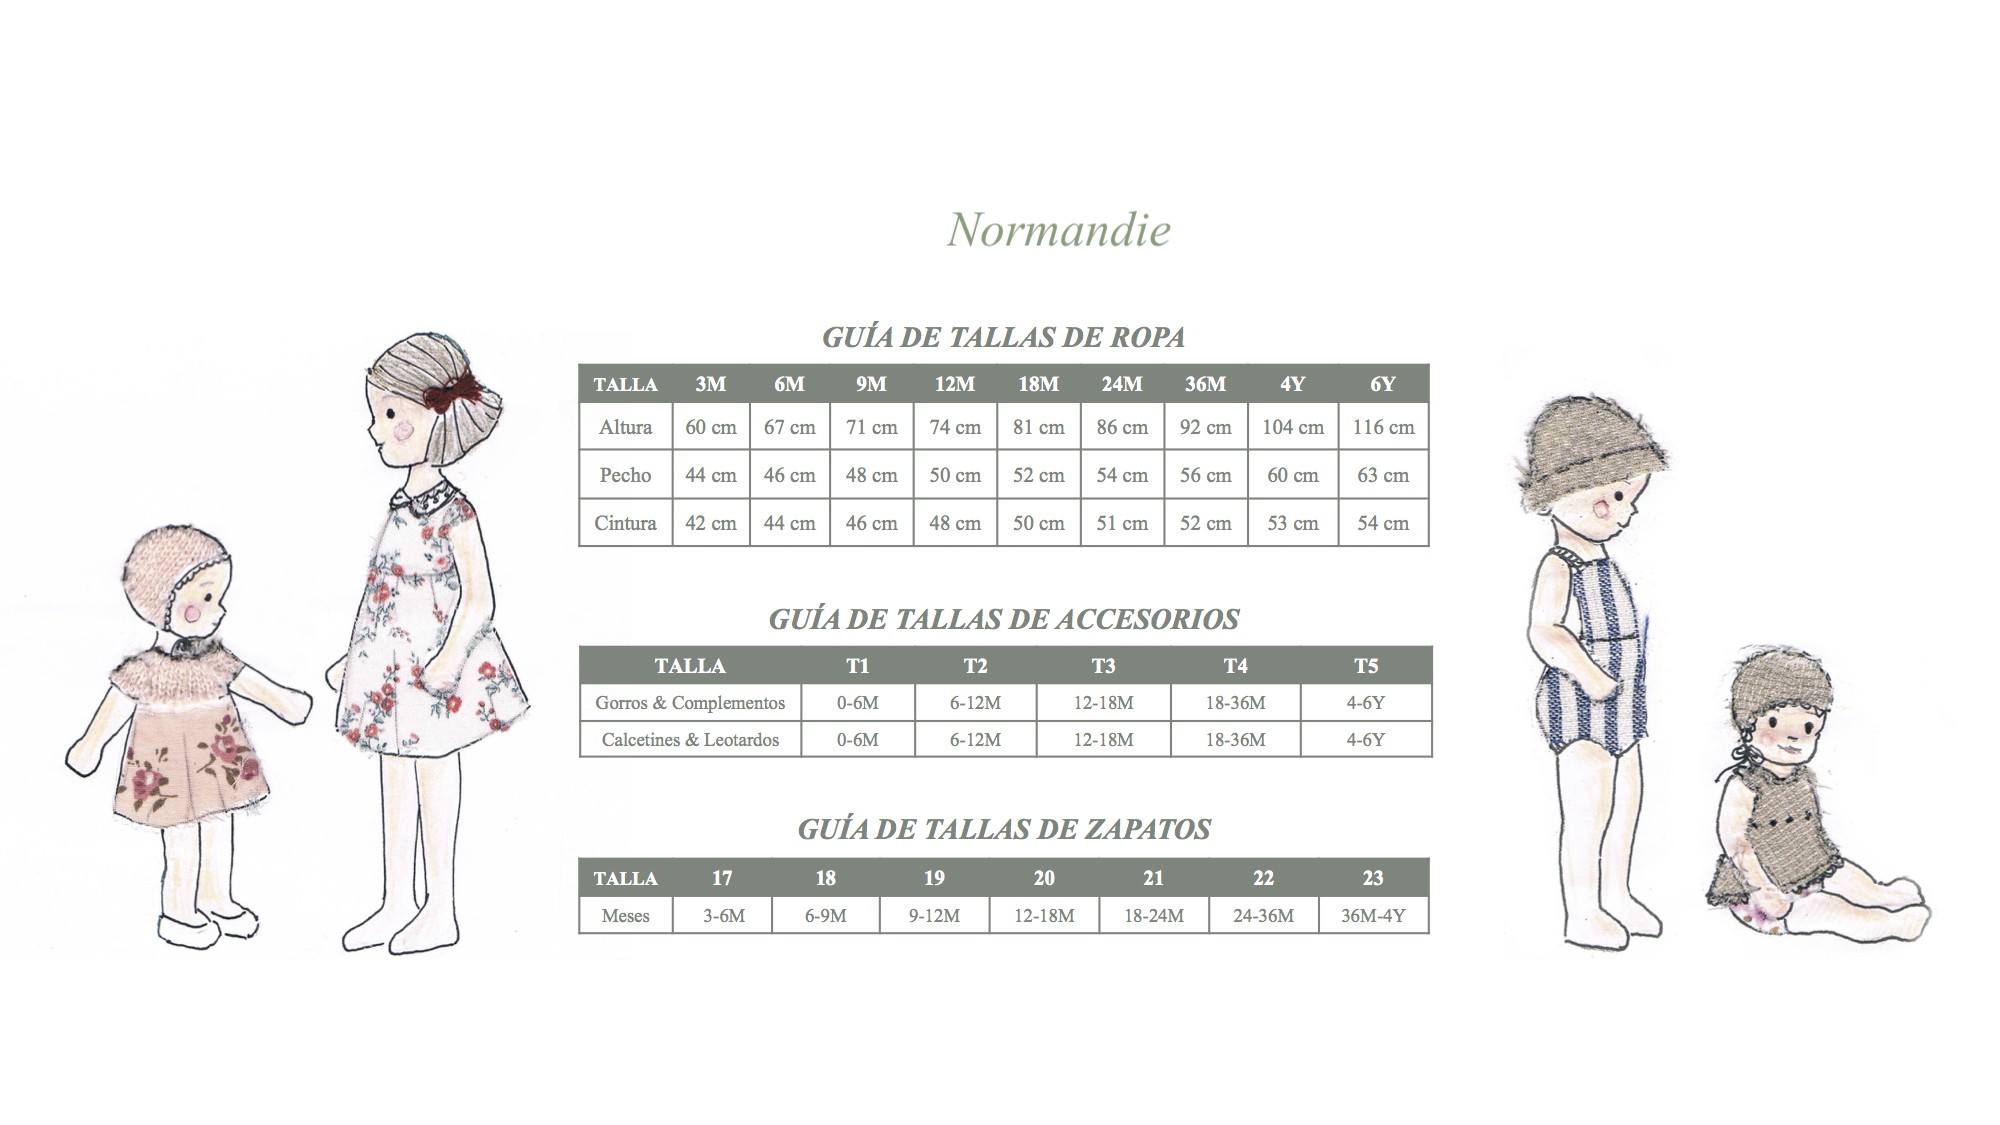 Guía tallas Normandie